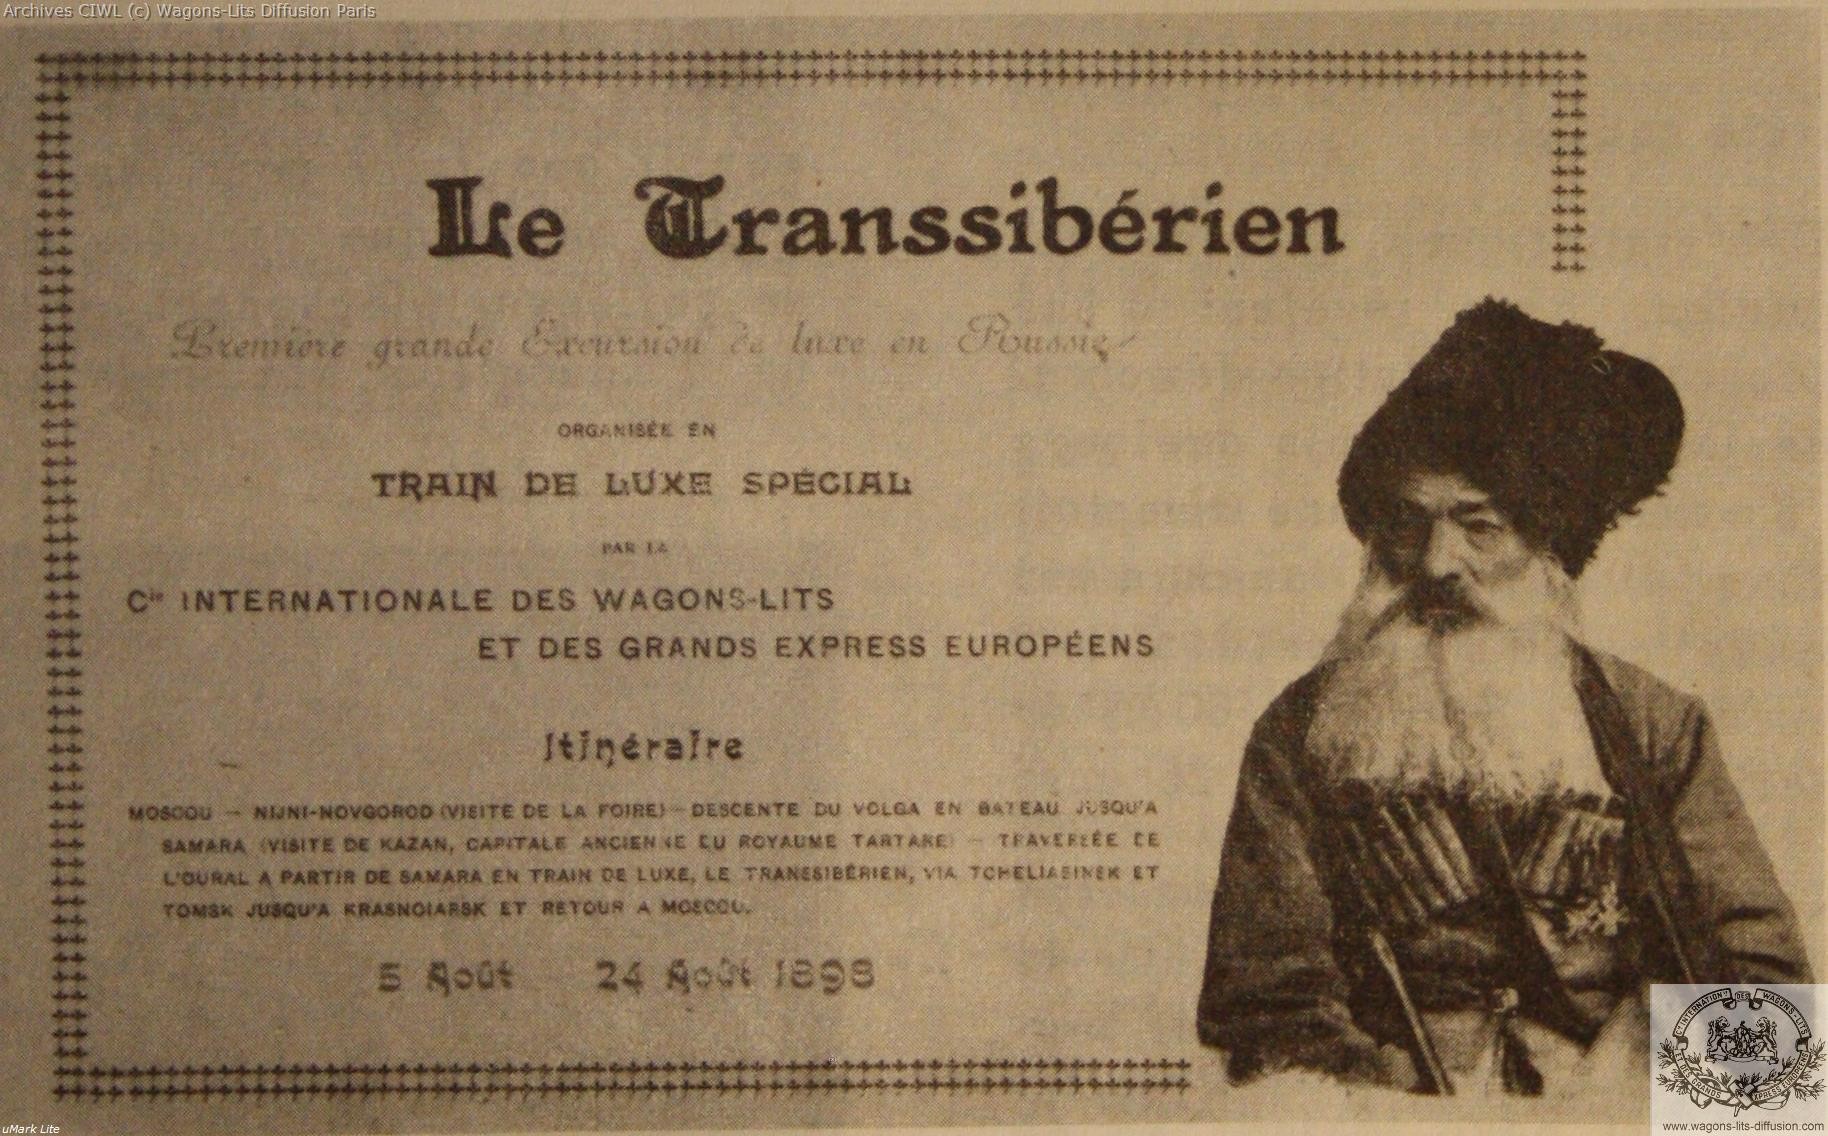 Wl transsiberien 1898